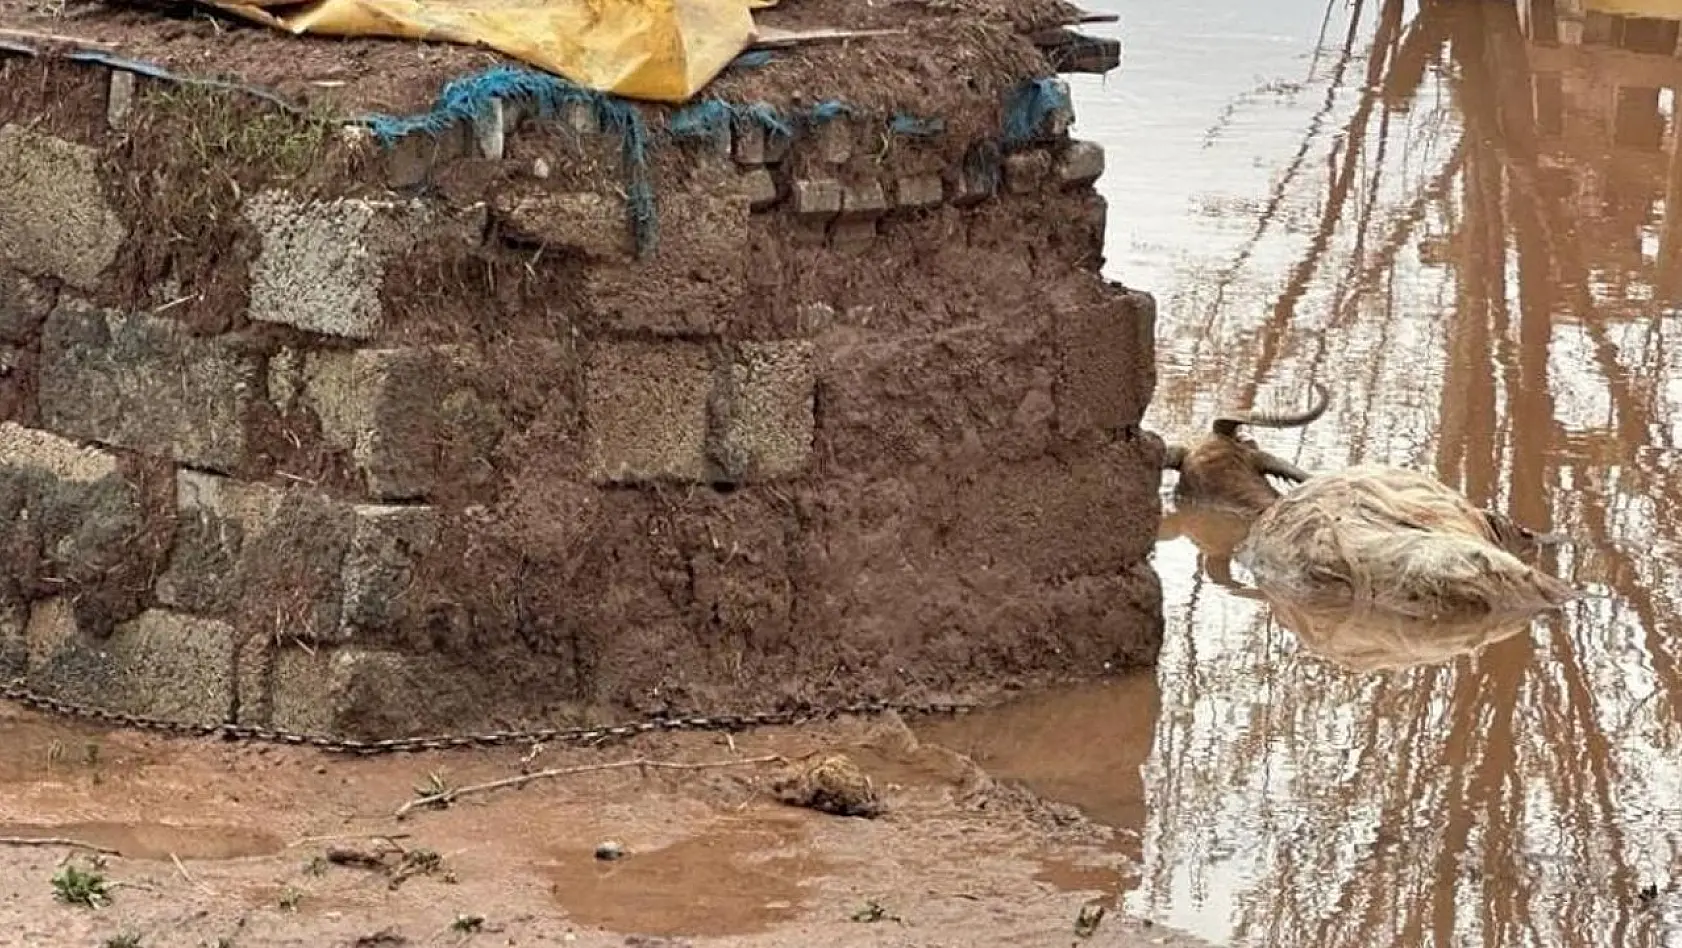 Elazığ'da sağanak yağışın vurduğu beldede hayvanlar telef oldu